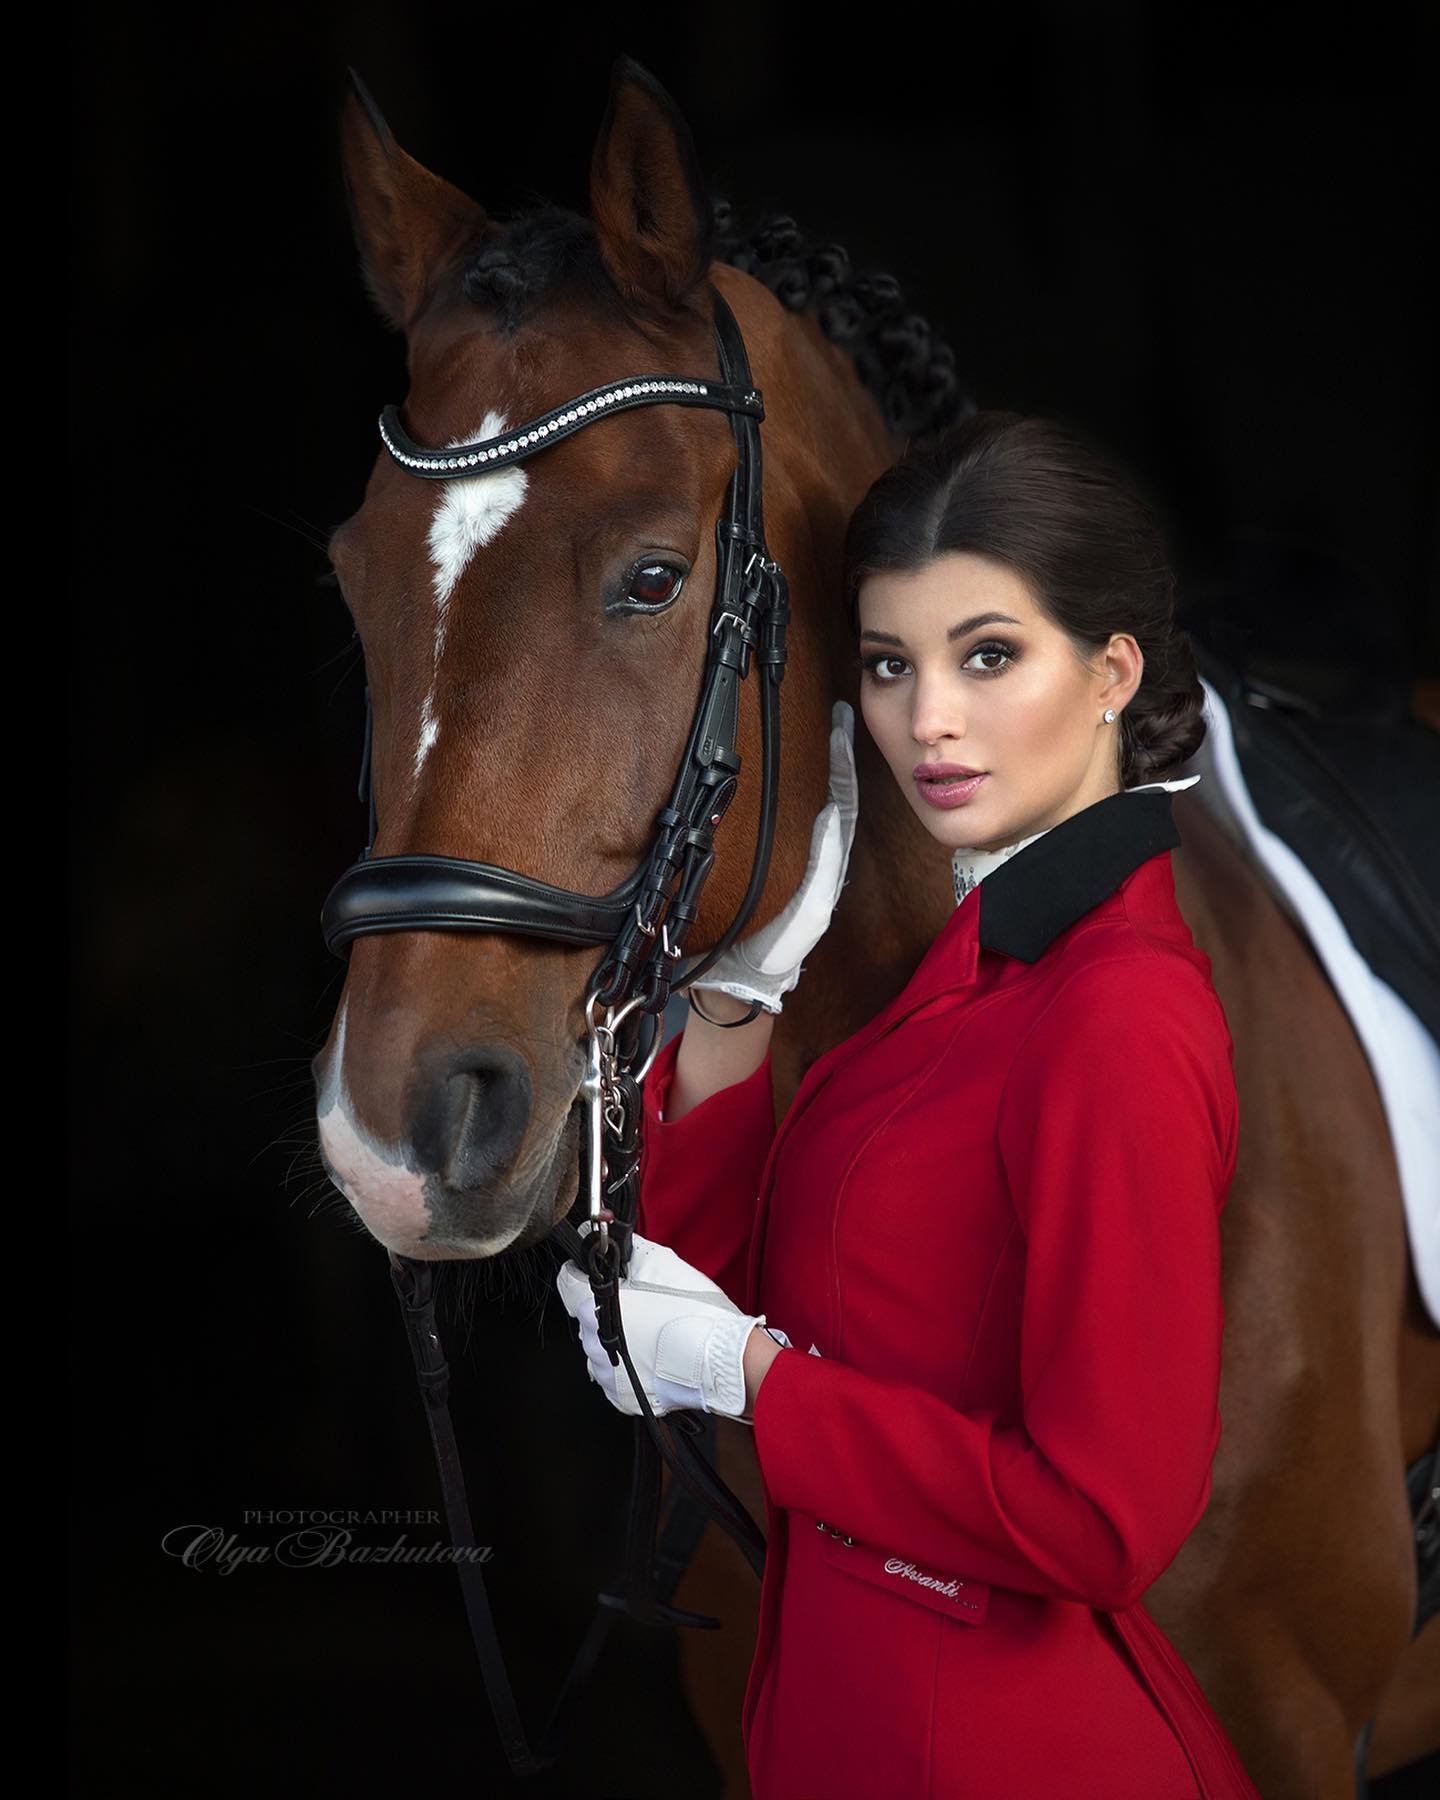 Olga Bazhutova fotografia equestre - Modelo morena com roupa de equitação vermelha e cavalo